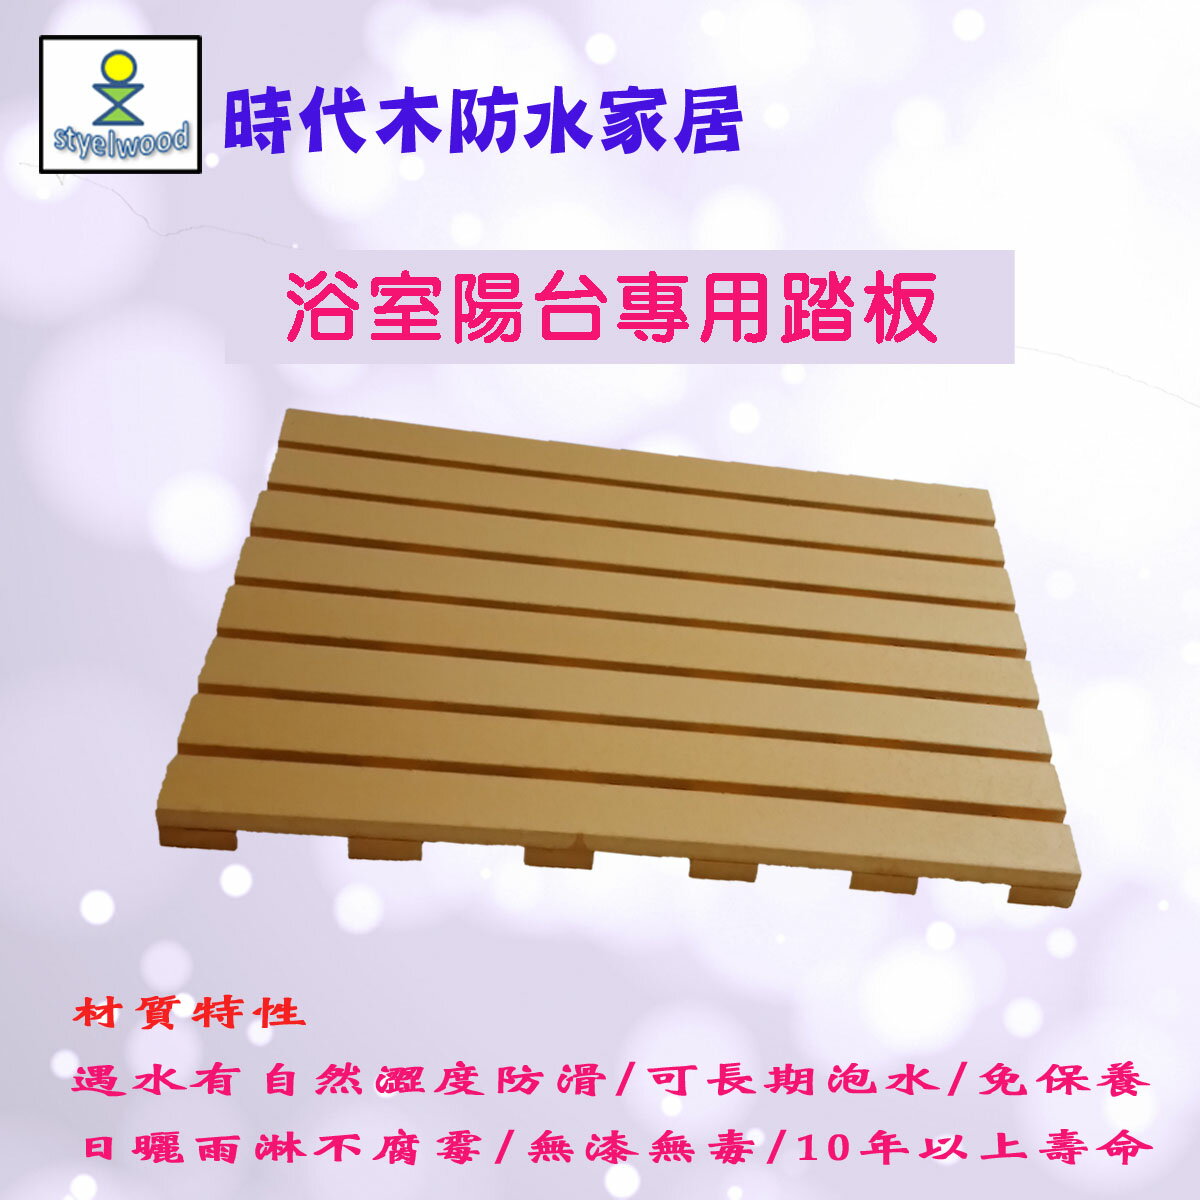 防水防滑浴室踏板(B材65x47x2.4cm)/浴室地板/陽台地板/ 戶外地板/防滑踏板